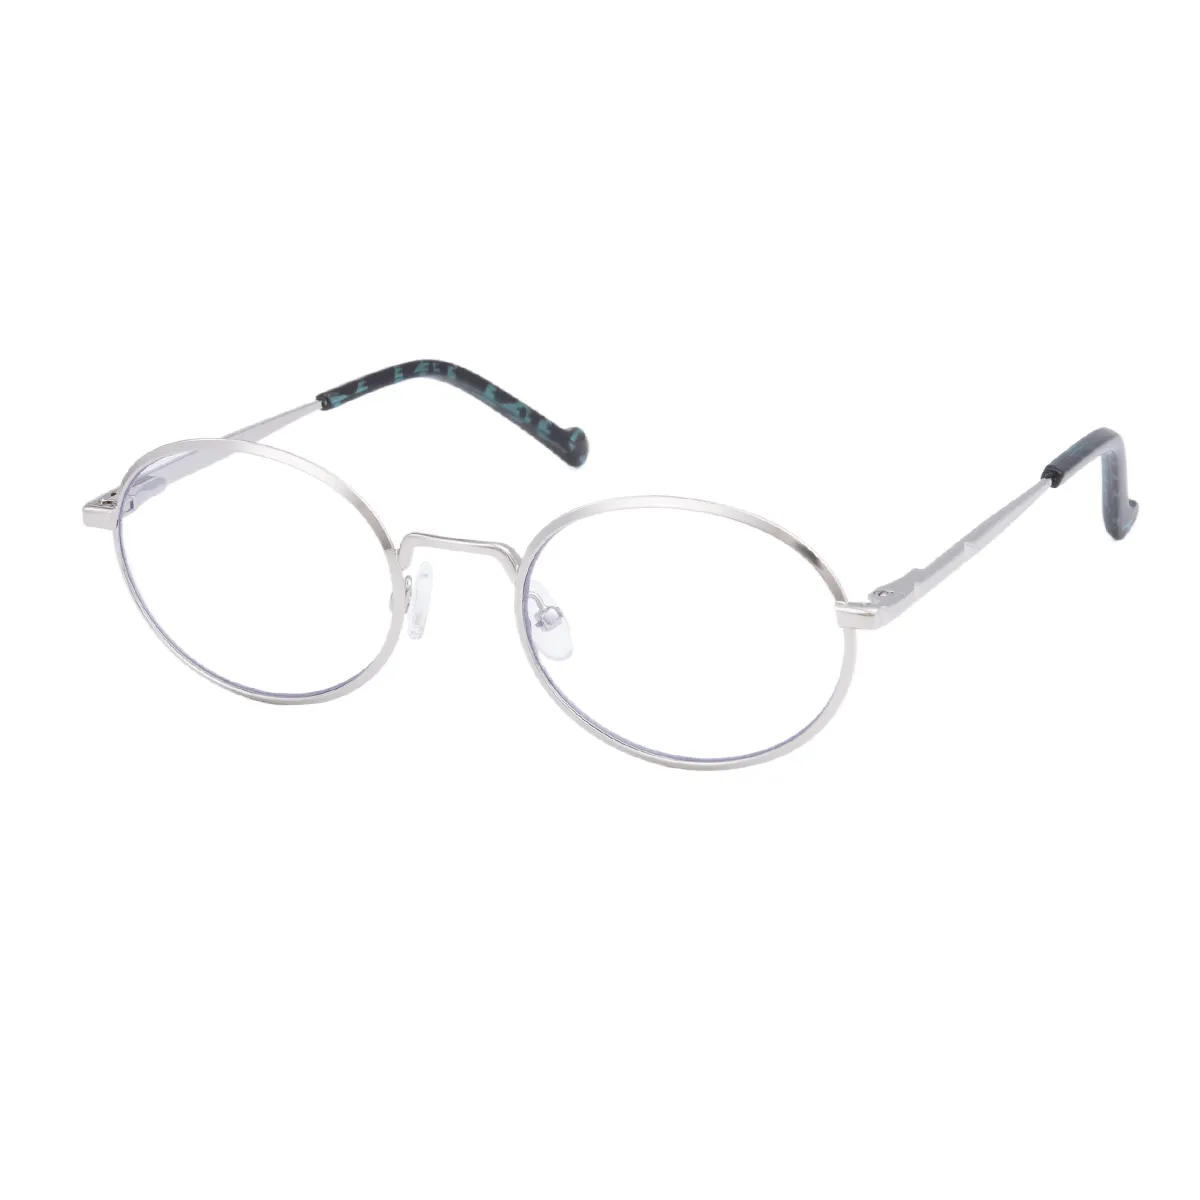 Hulda - Oval Silver Glasses for Men & Women - EFE